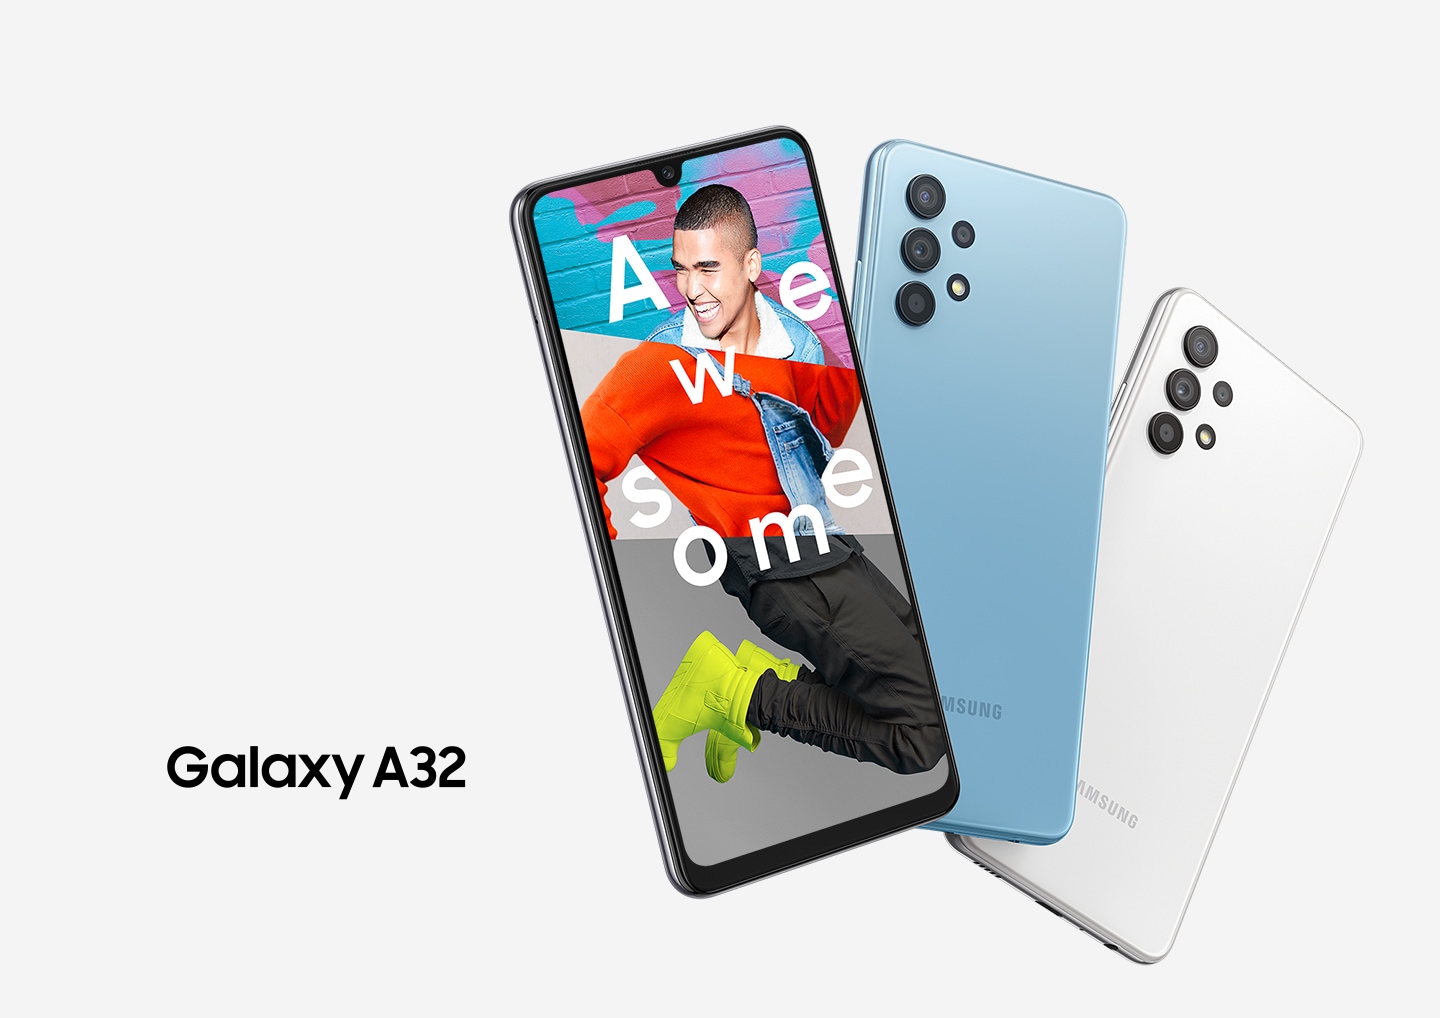 Galaxy A32 Key visual izlazi u tri uređaja sa svojim službenim logotipom sa strane. Na ekranu uzbuđeni mladić uskoči na mjesto gdje stoji, okružujući tekst "Awesome" na sebi.